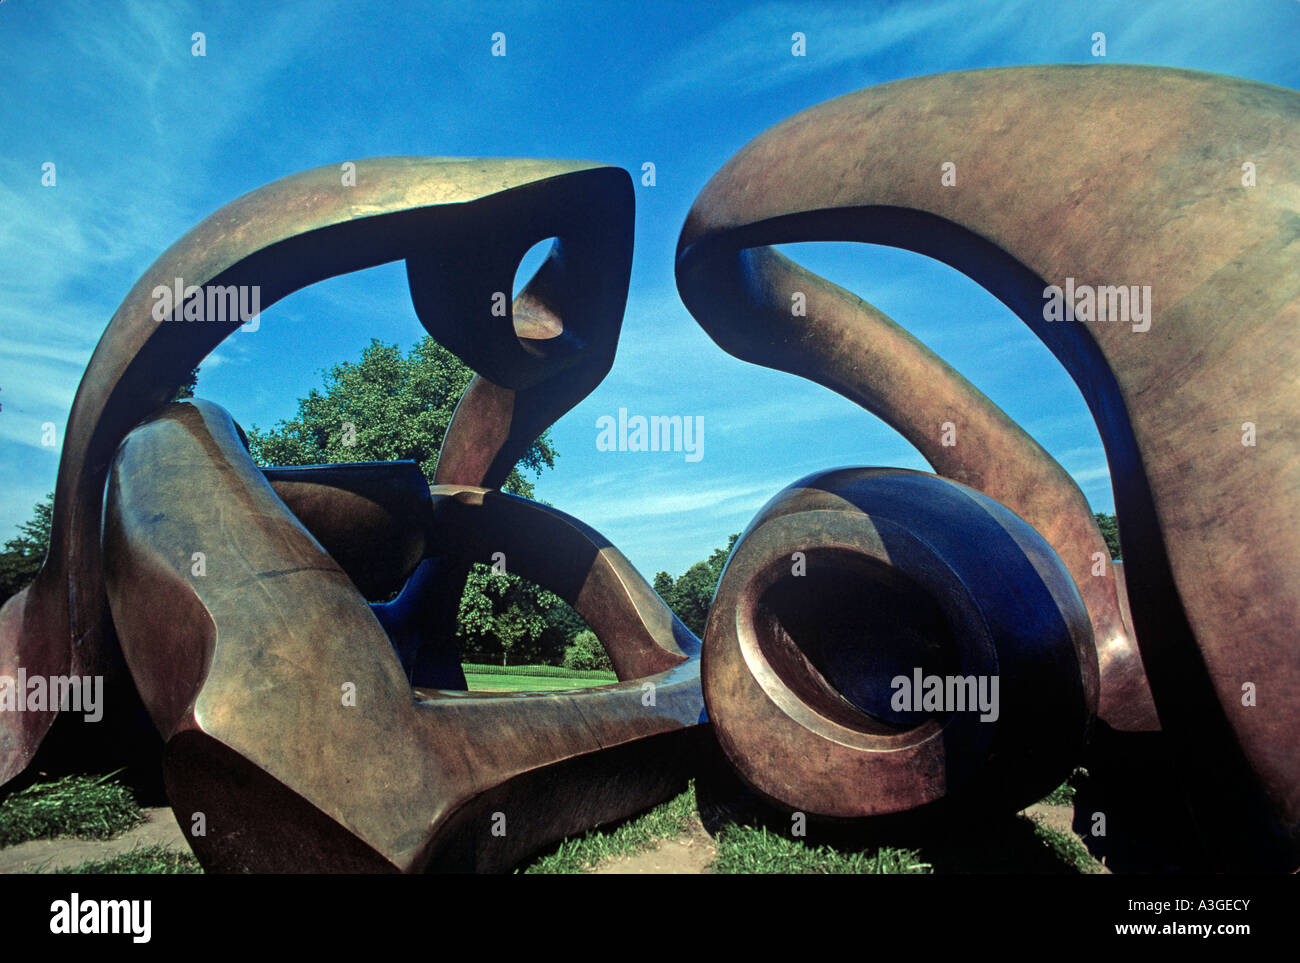 HILL arcos uno de varias esculturas de Henry Moore formando una exposición abierta por el serpentín Foto de stock